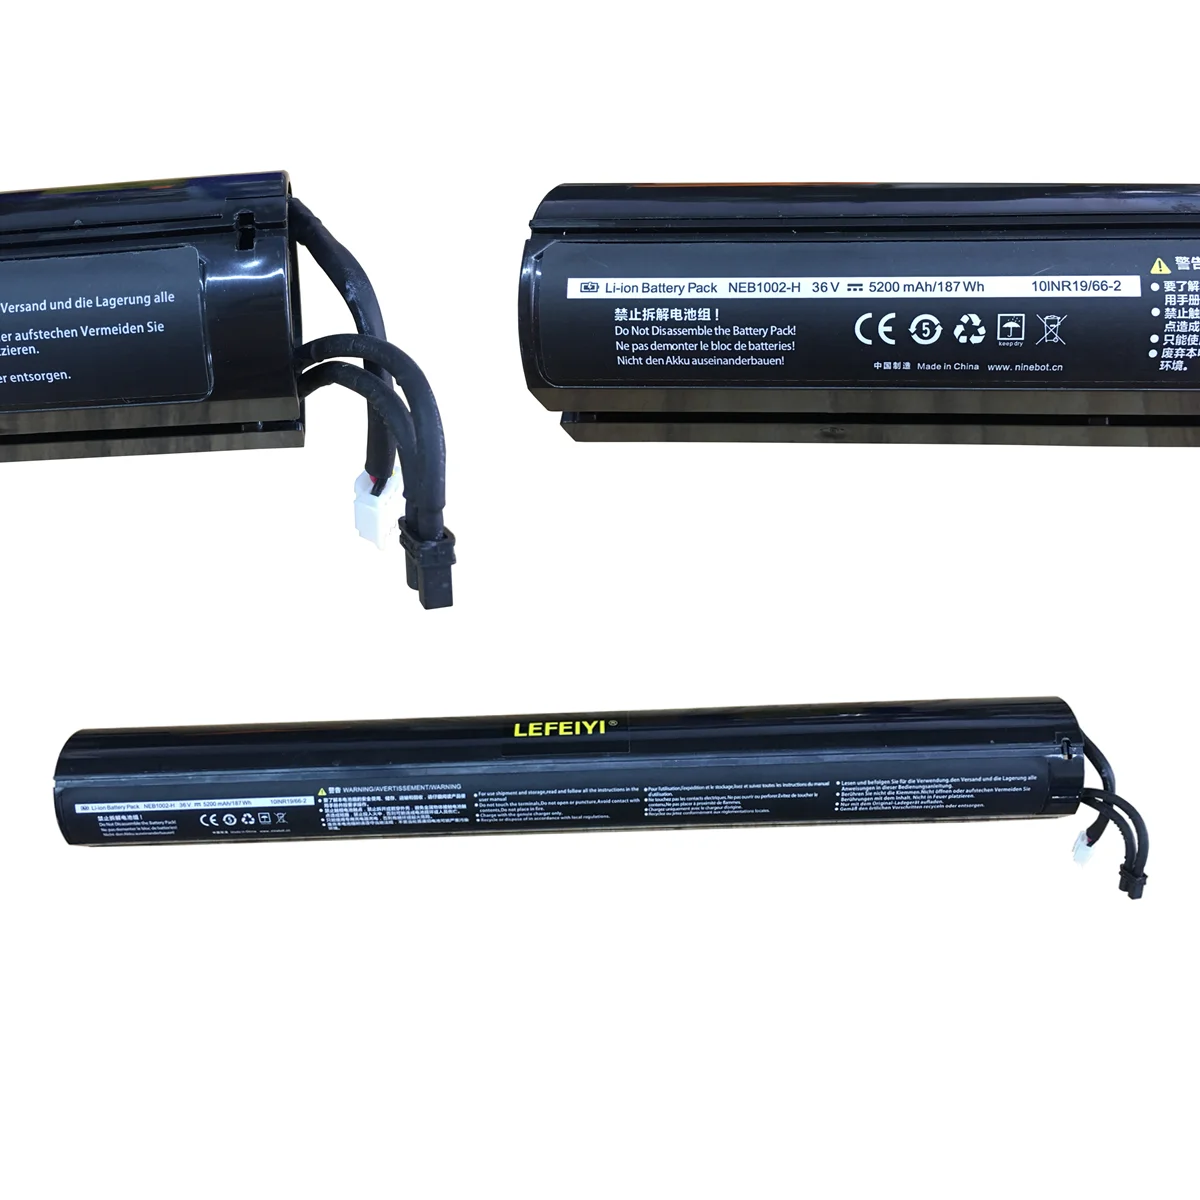 Segway Li-Ion Battery Pack NEB1002-H 36V 5200mAh/187 Wh 10INR19/66-2 